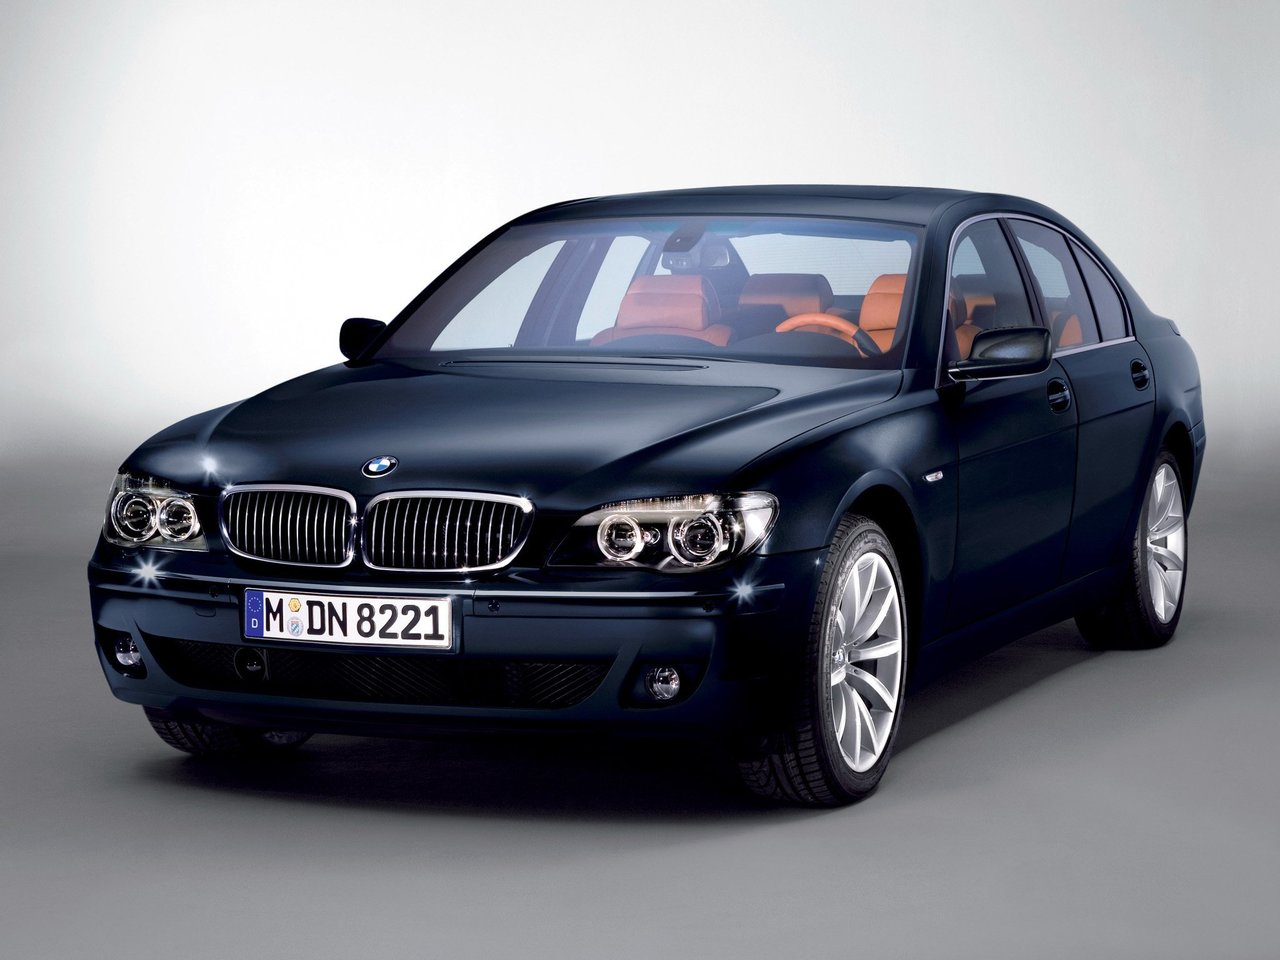 Расход газа пяти комплектаций седана BMW 7 серия. Разница стоимости заправки газом и бензином. Автономный пробег до и после установки ГБО.